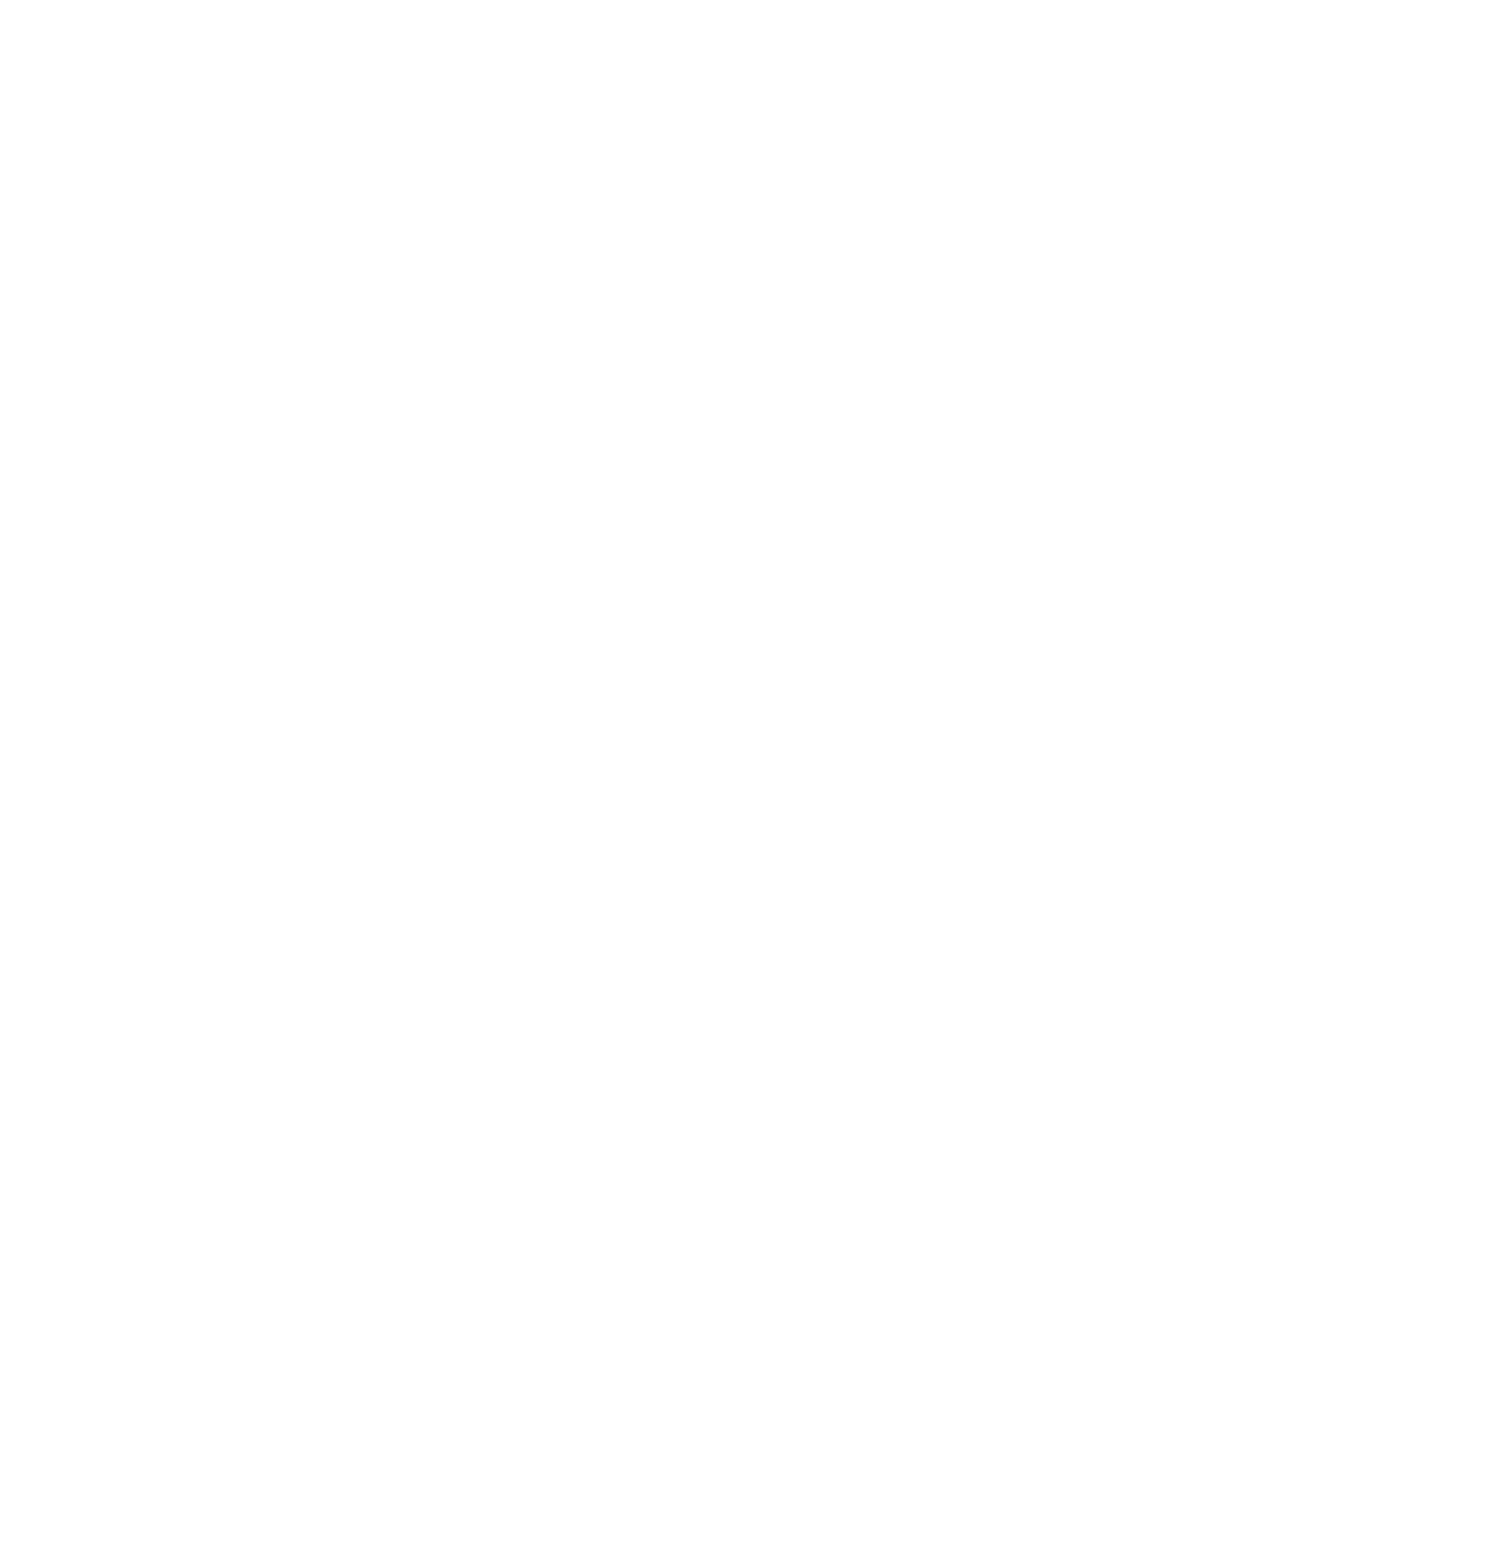 Ecopro logo for dark backgrounds (transparent PNG)